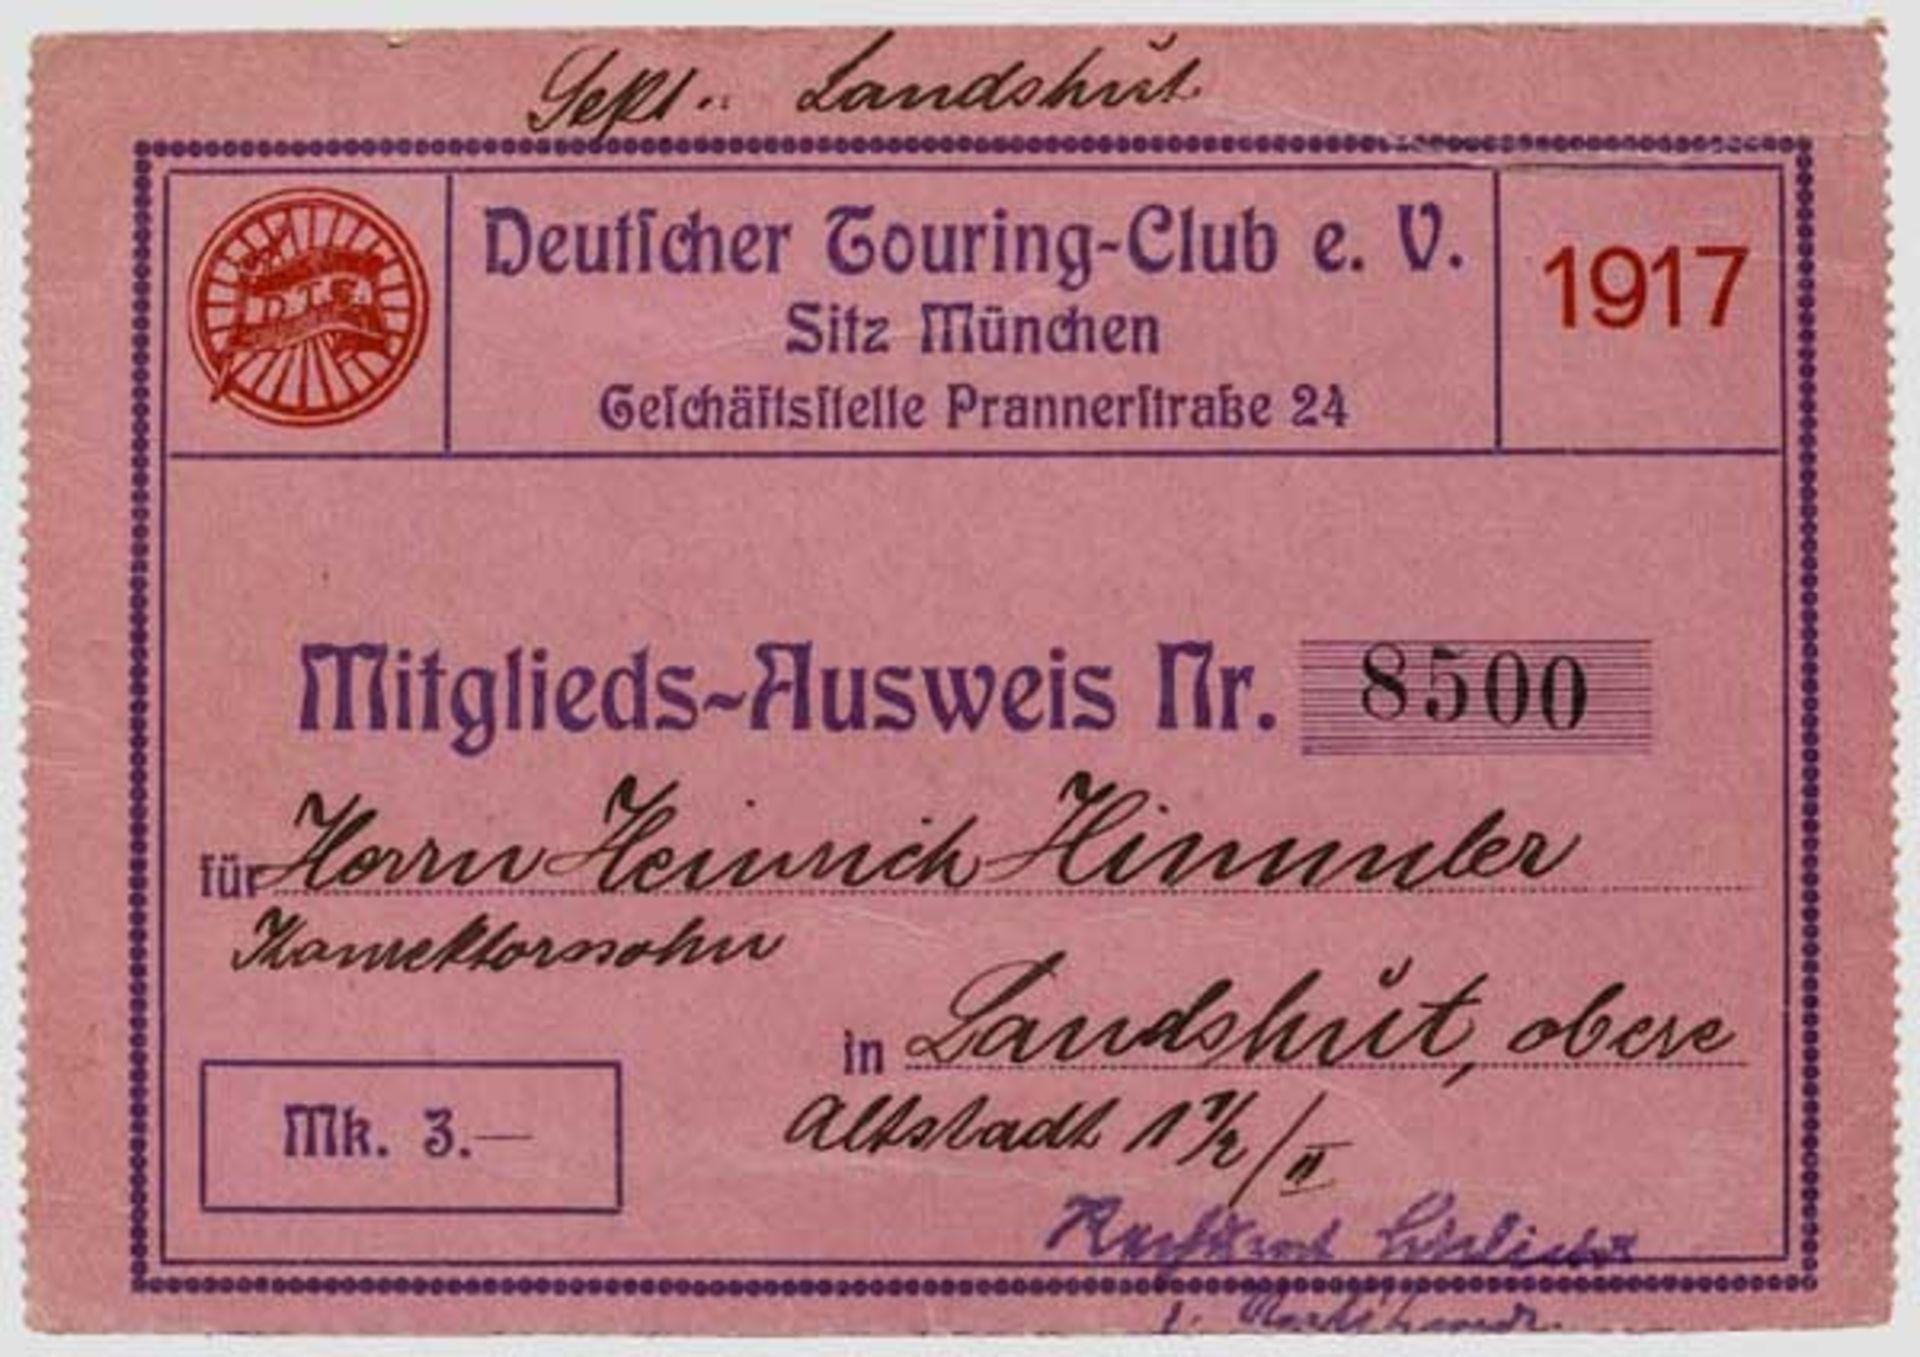 Heinrich Himmler - Mitgliedsausweis im Deutschen Touring-Club e.V. für das Jahr 1917 Rosafarbener